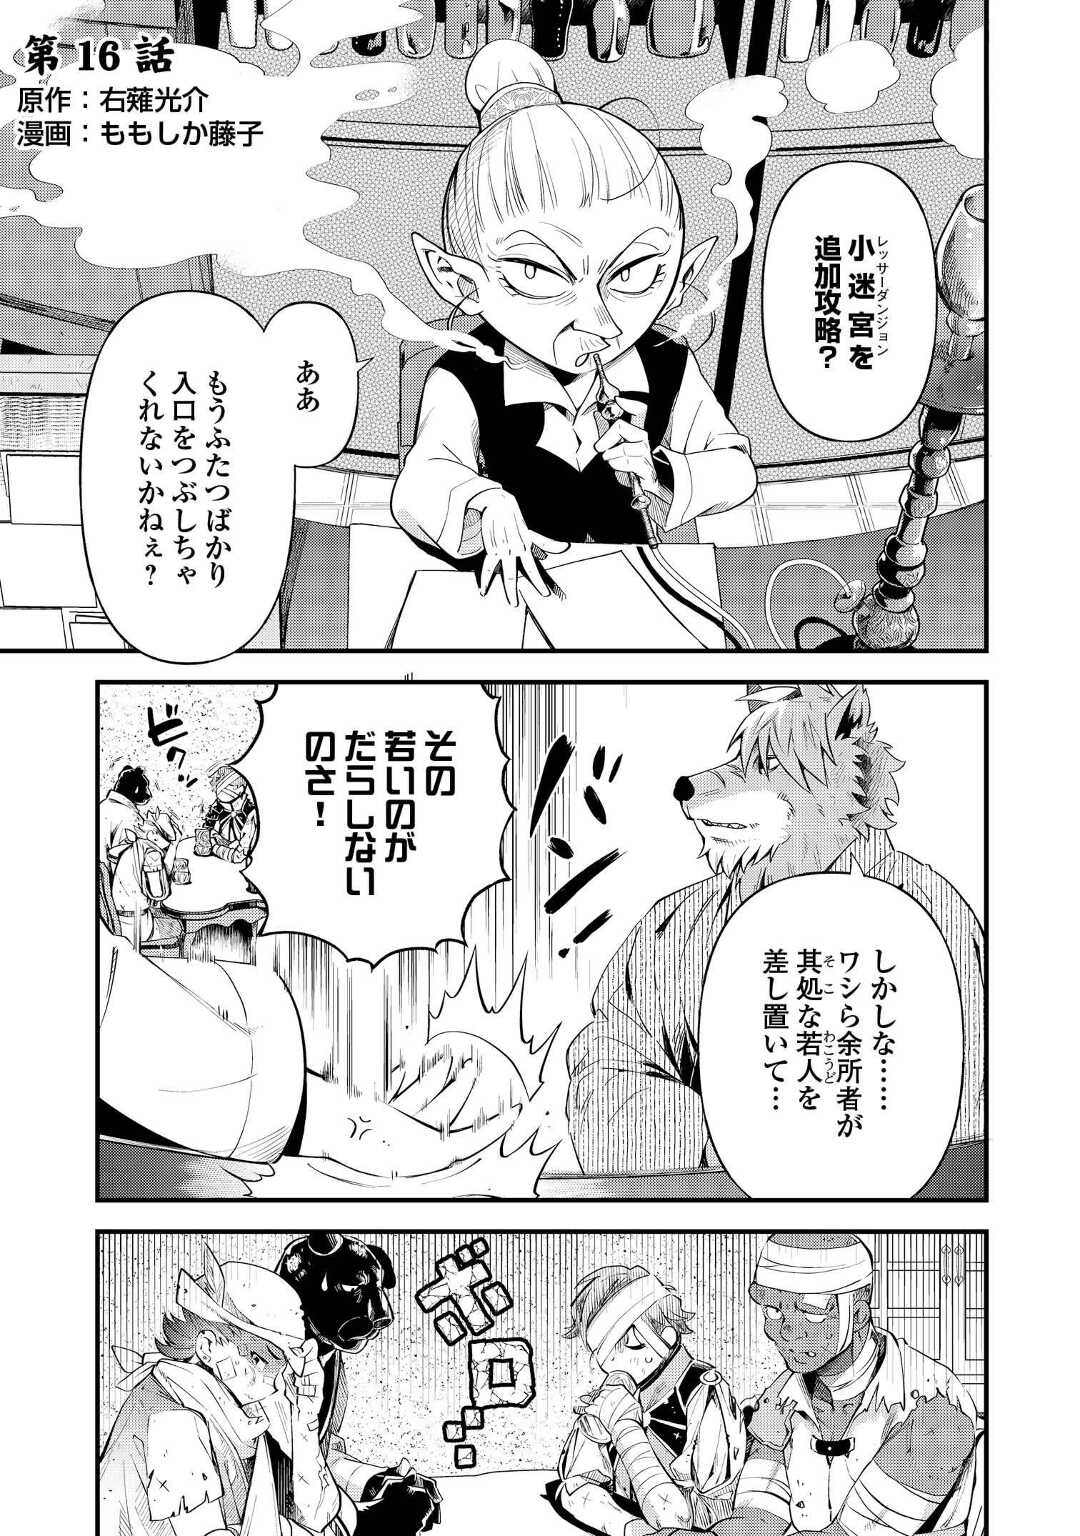 Ochikobore 1 Mahou Tsukai wa, Kyou mo Muishiki ni Cheat o Tsukau - Chapter 16 - Page 1